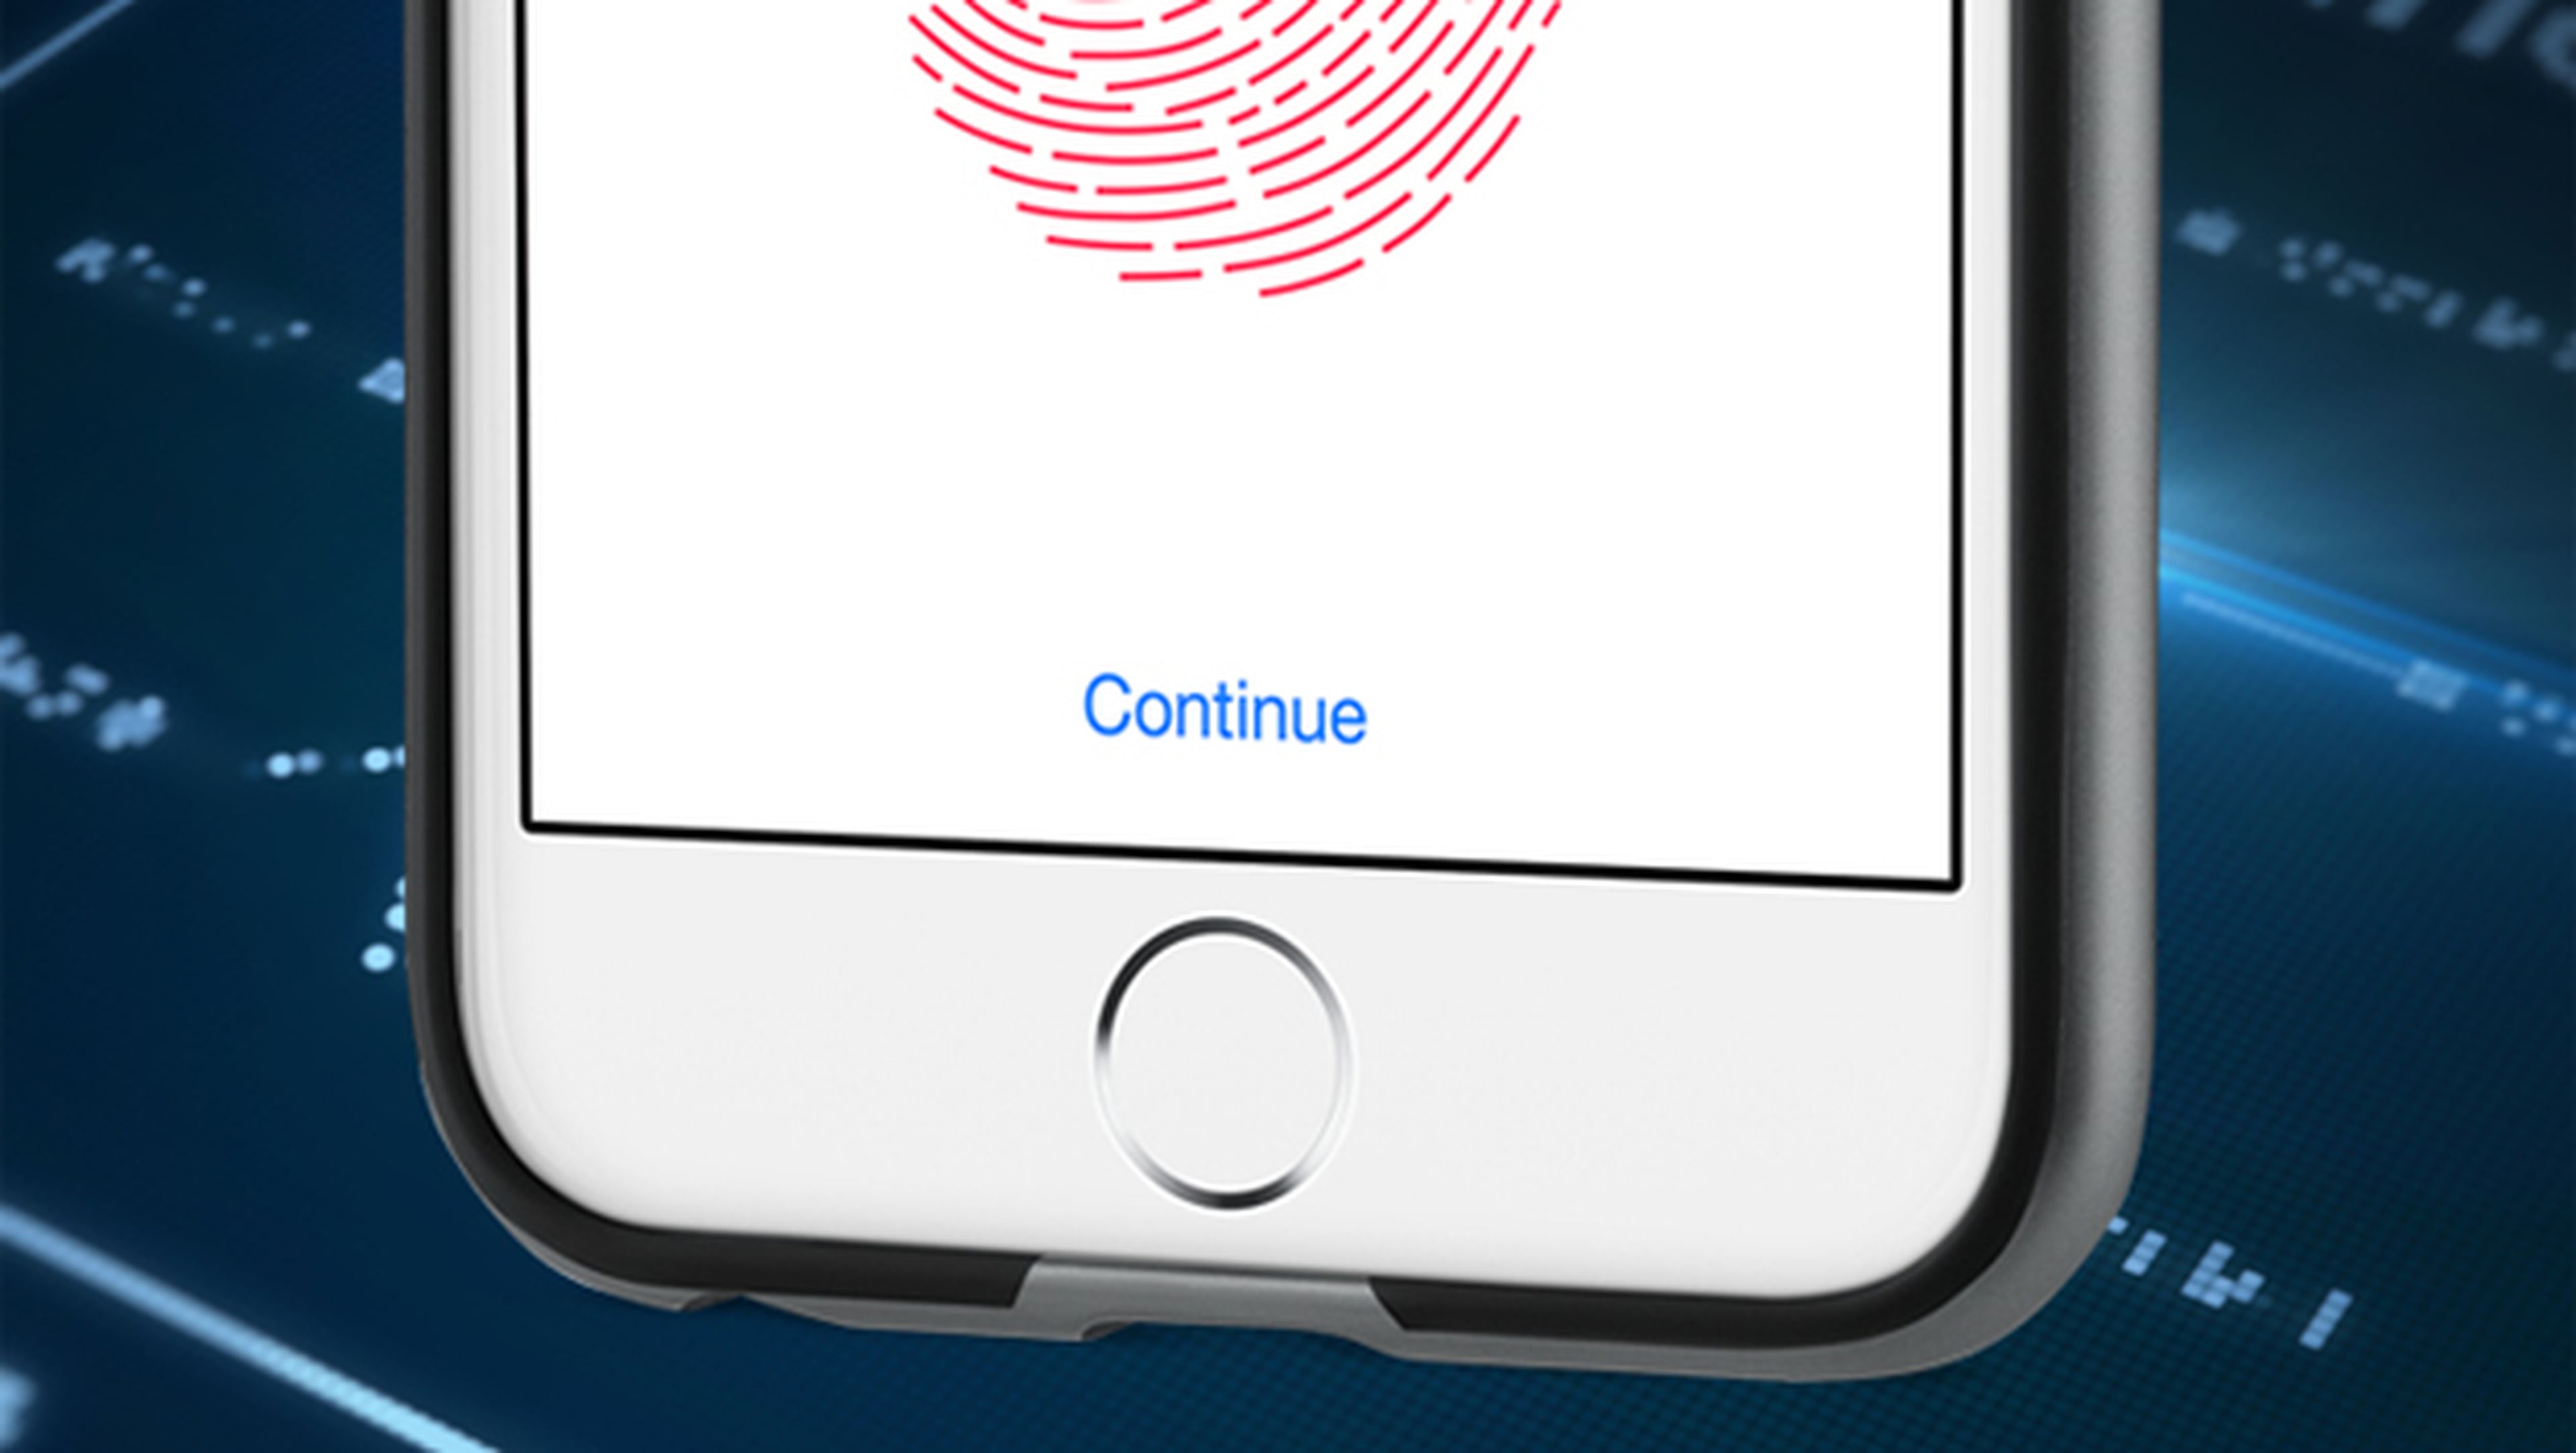 iOS 11 tendrá una función para desactivar el bloqueo por huella dactilar